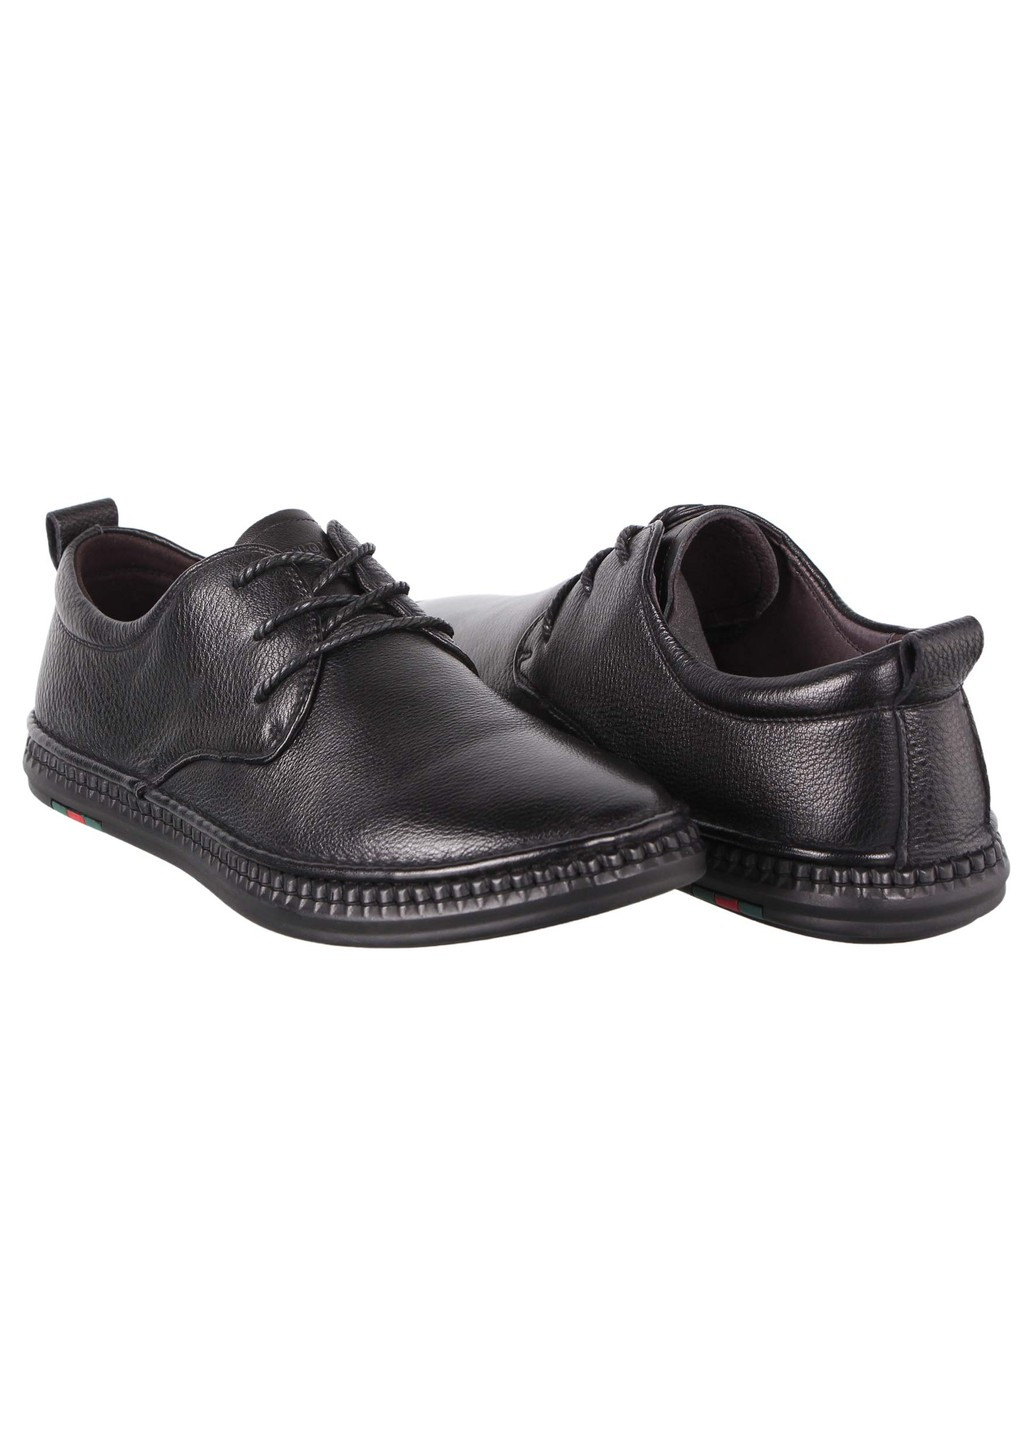 Черные мужские туфли 196963 Fabio Moretti на шнурках